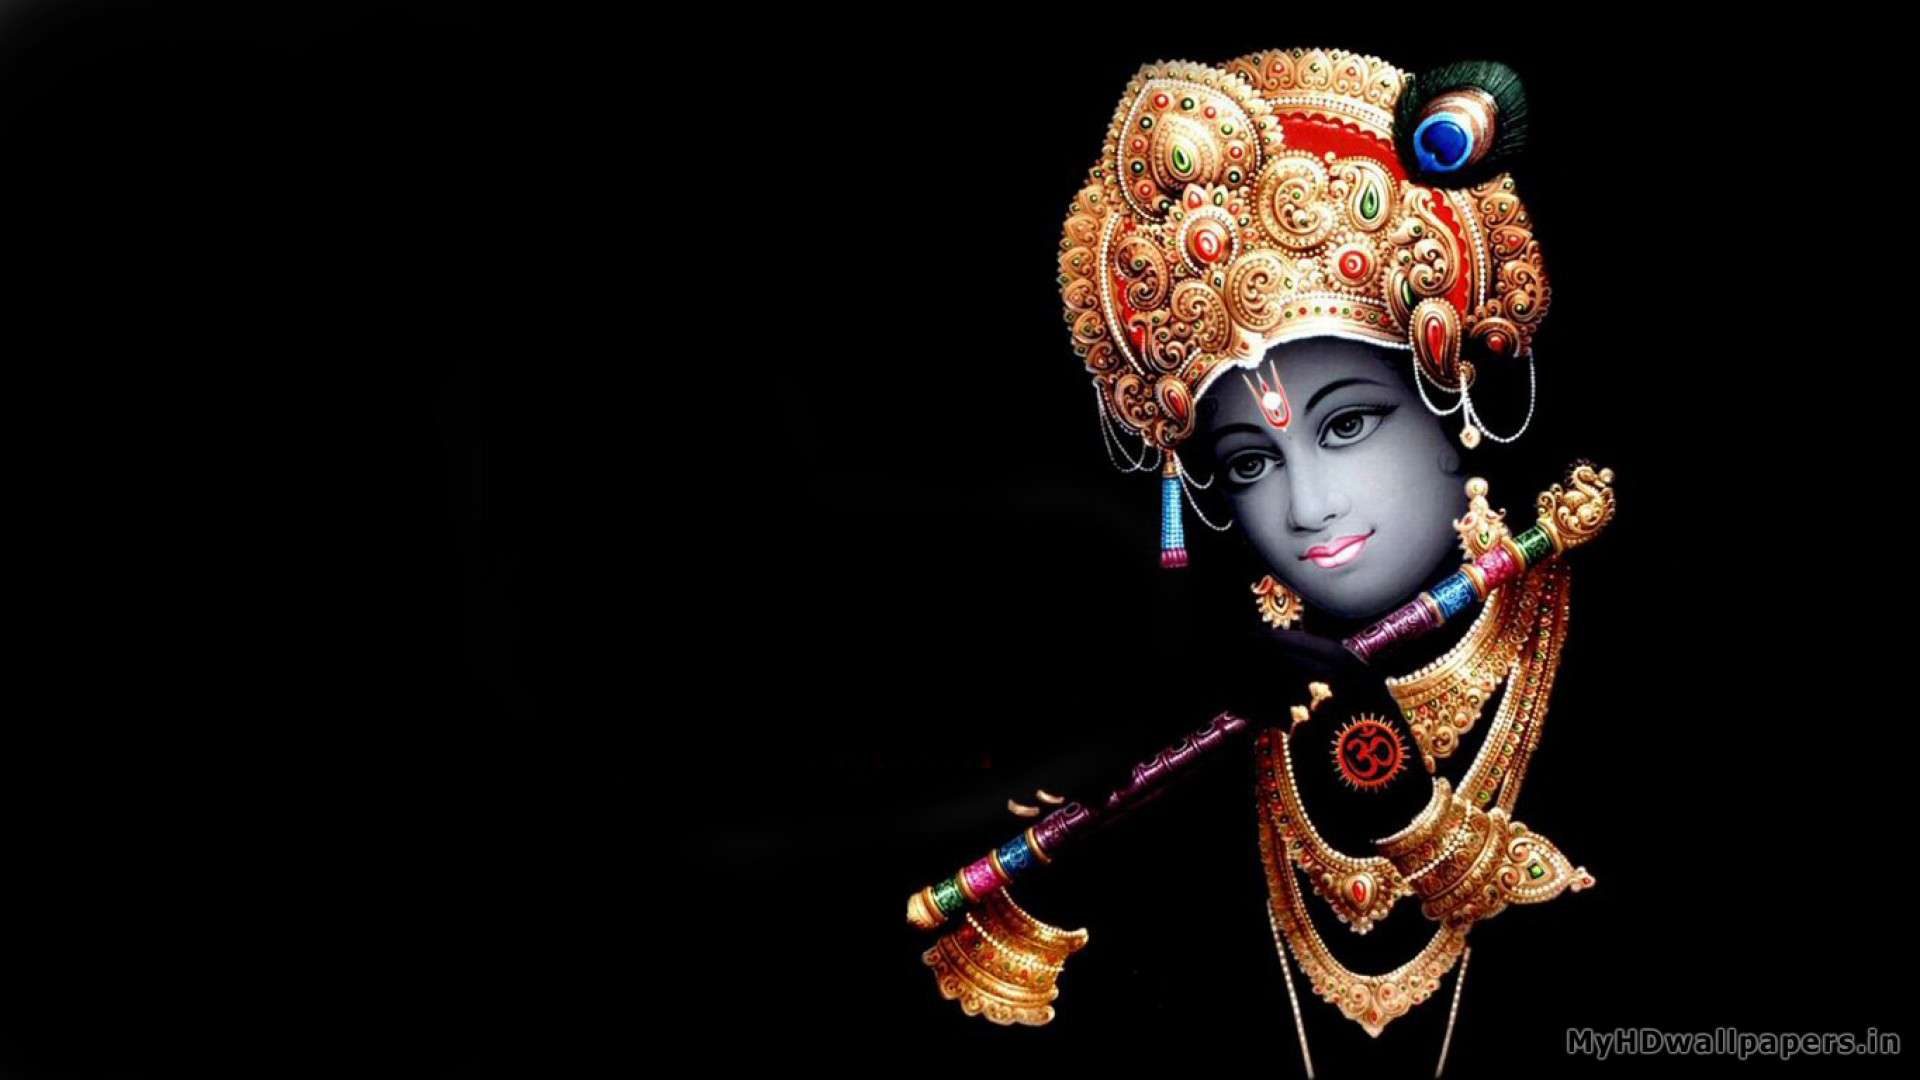 47+] Krishna Wallpaper for Desktop - WallpaperSafari